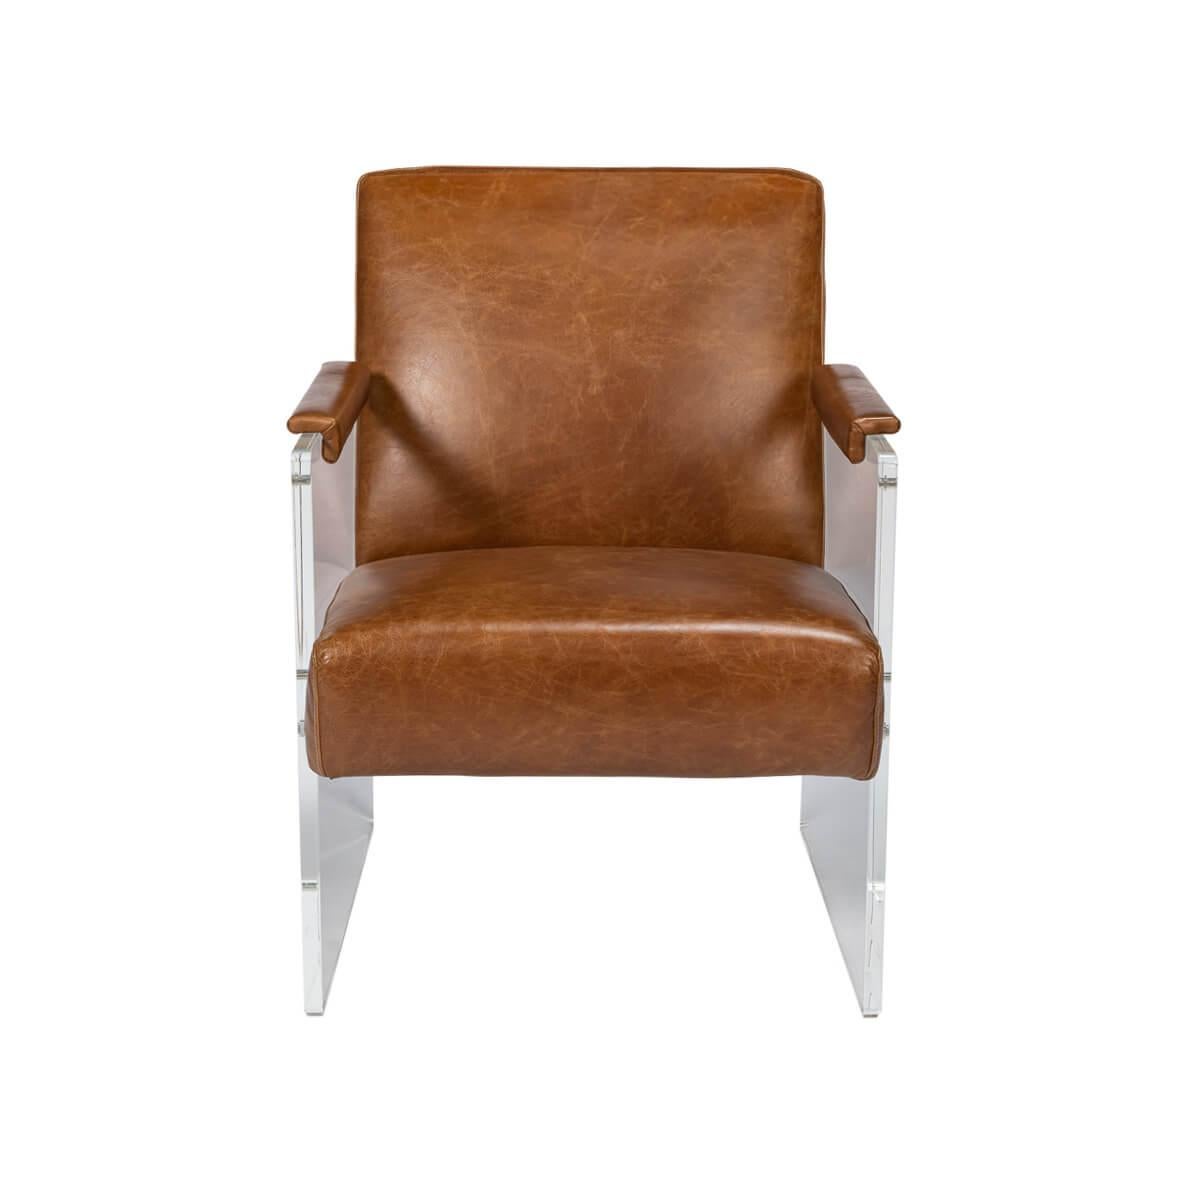 Sitz und Rückenlehne dieses Sessels bestehen aus glattem, kubabraunem Leder, das für ein luxuriöses Sitzerlebnis sorgt. Im Kontrast dazu stehen die Seitenteile aus klarem Acryl, die den Eindruck erwecken, in der Luft zu schweben.

Die transparente